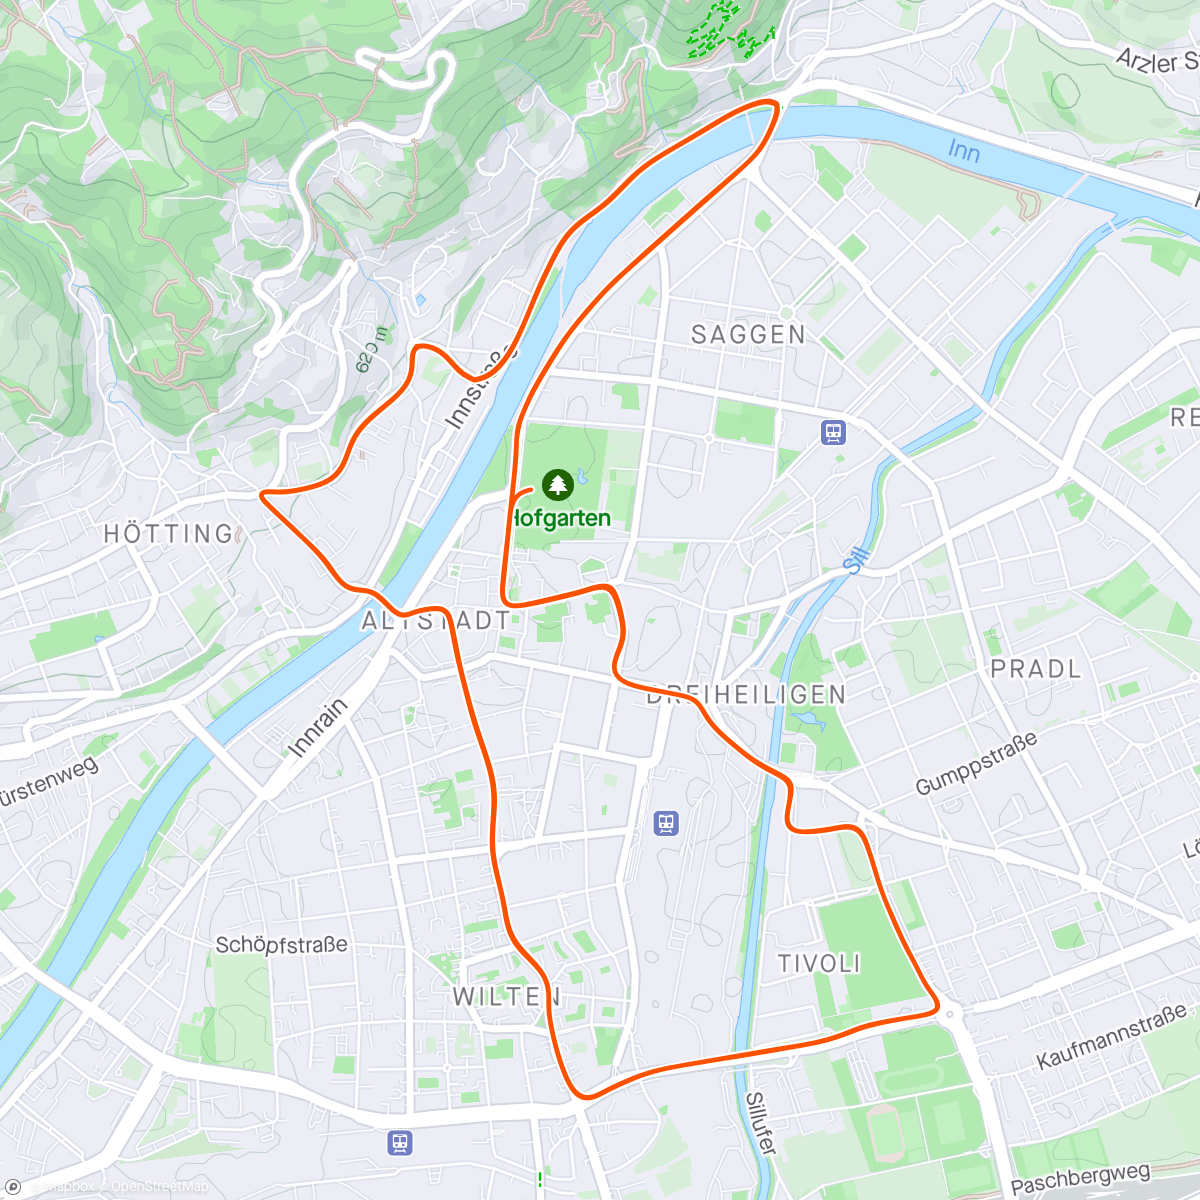 Map of the activity, Zwift - Race: Sydkysten Race (B) on Innsbruckring in Innsbruck